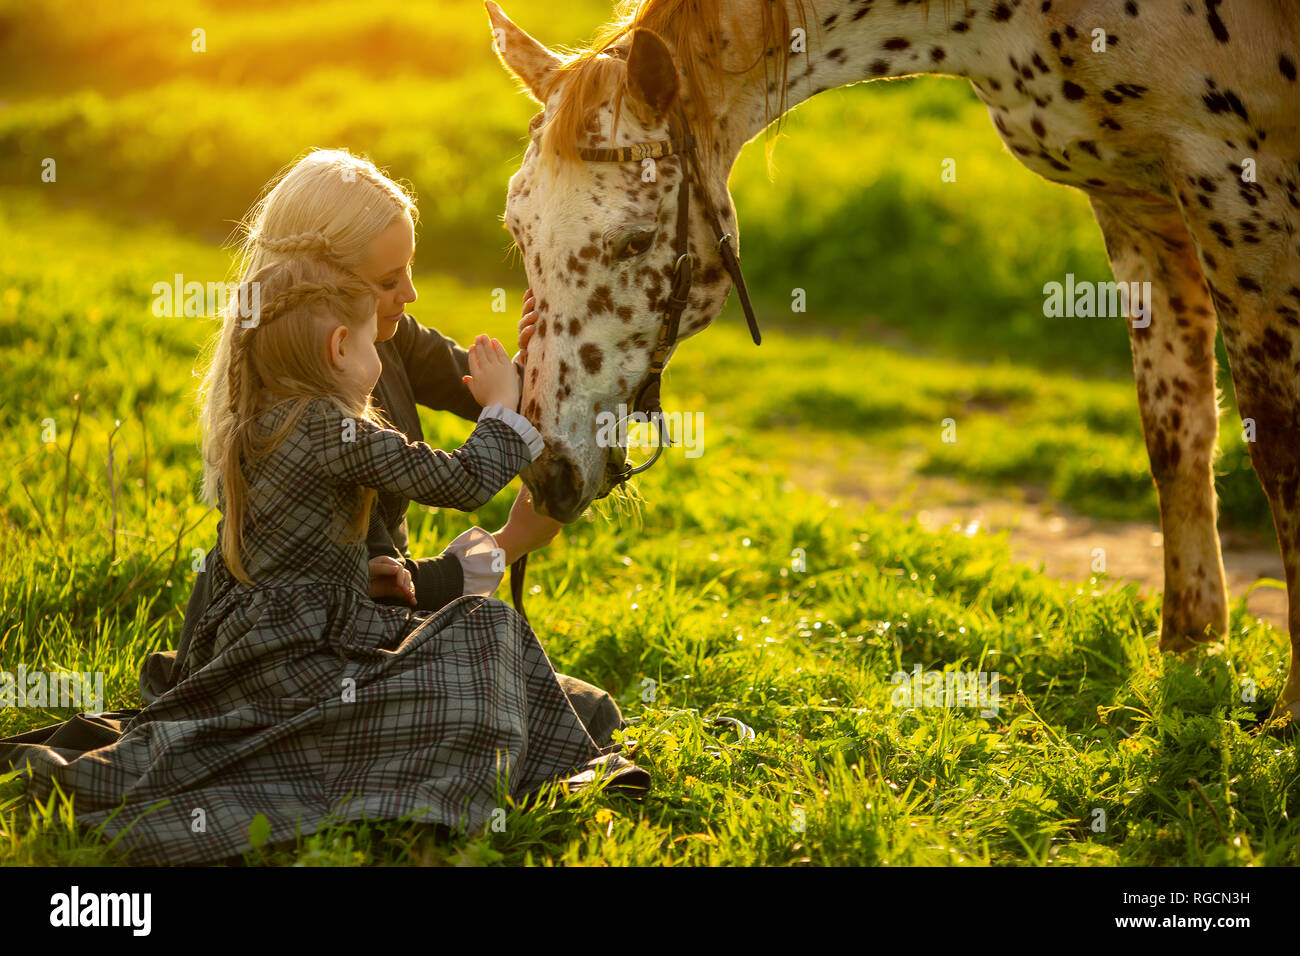 Seitliche Sicht auf eine junge Mutter mit einem kleinen Mädchen in den Kleidern Schlaganfall ein beschmutztes Pferd auf einer grünen Wiese Stockfoto